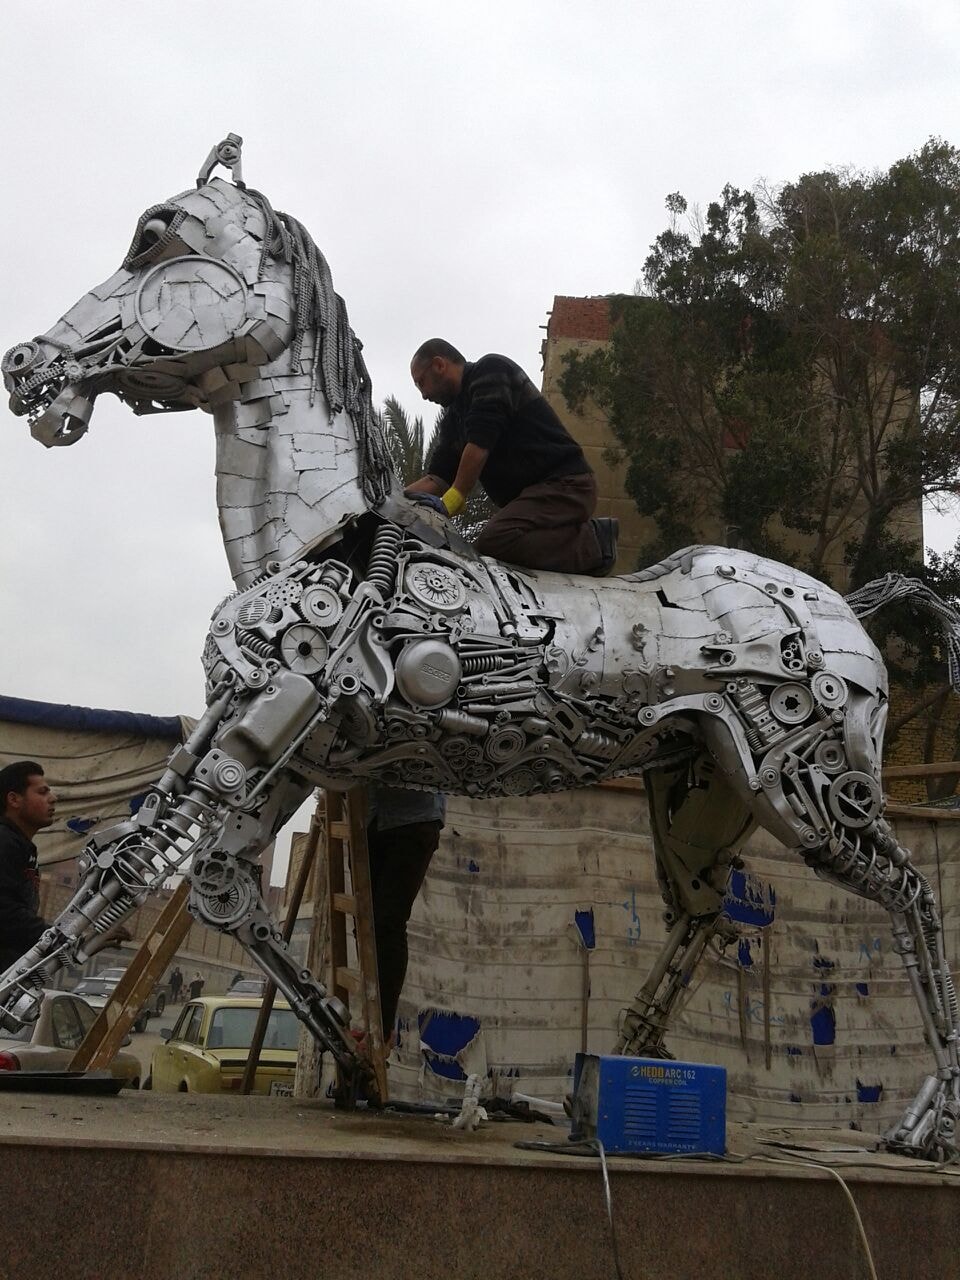 صورة اخرى لتمثال الحصان